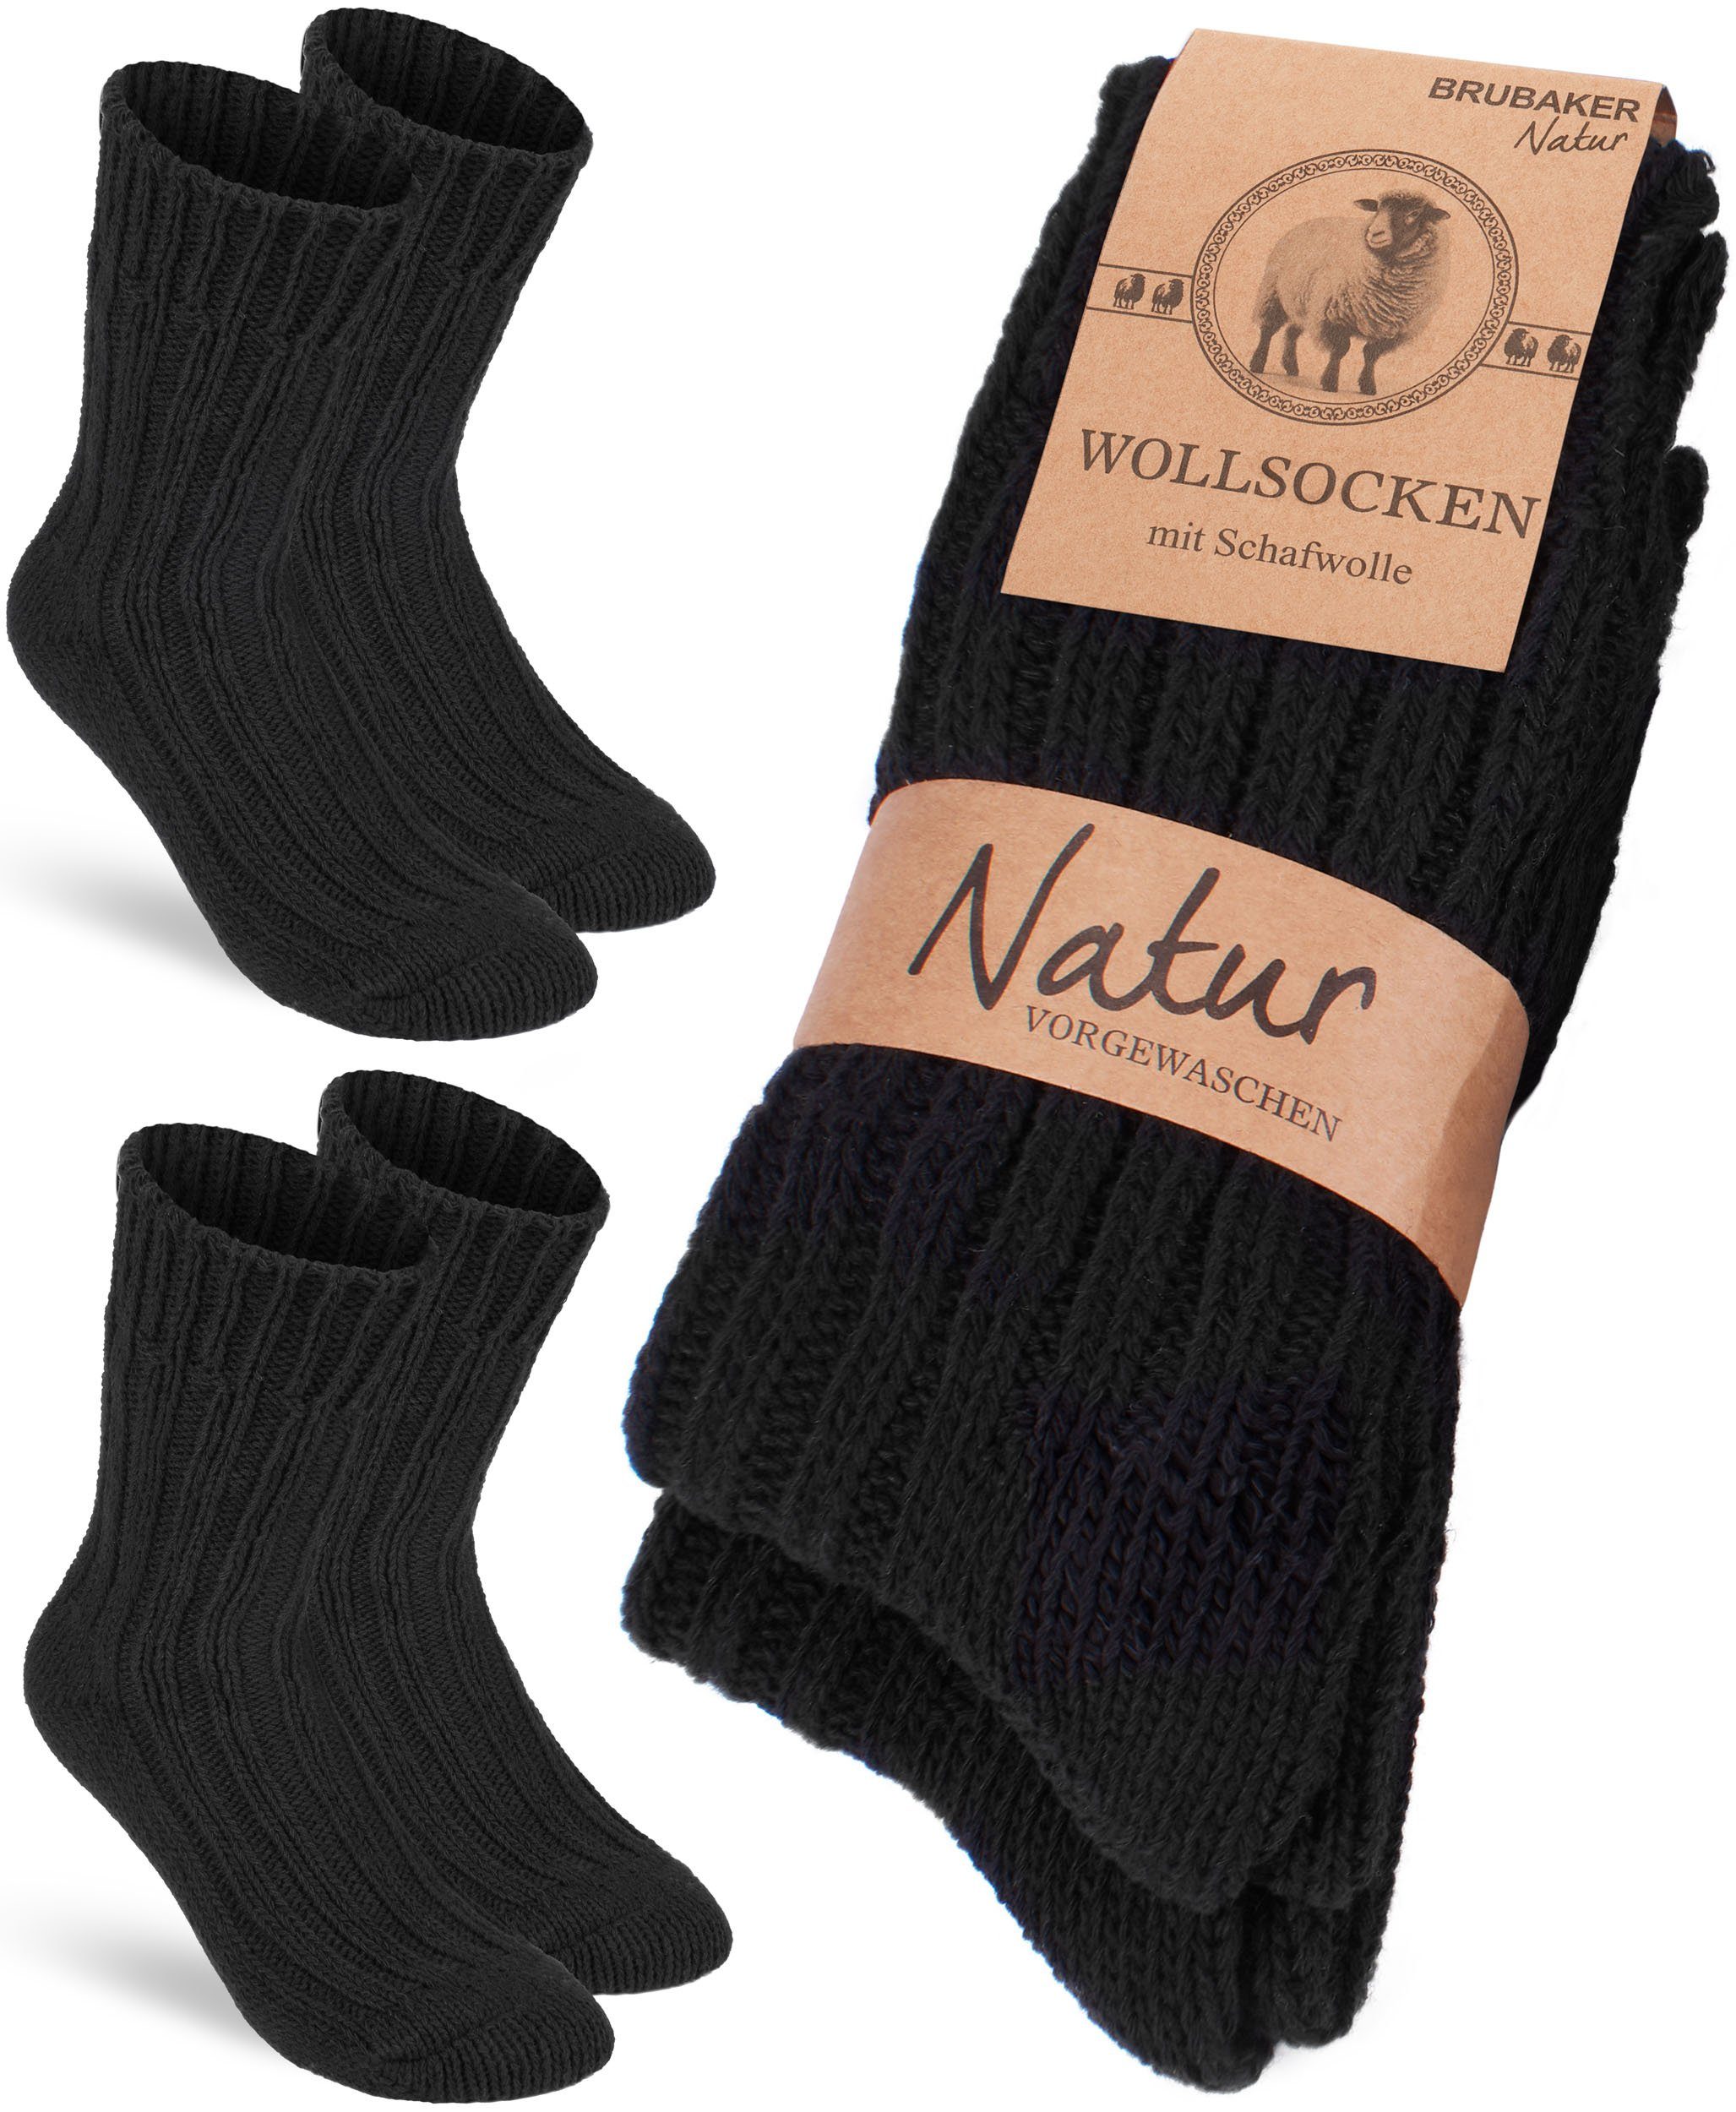 BRUBAKER Socken Wollsocken - Wintersocken für Damen und Herren - Warm und Flauschig (2-Paar) Stricksocken Set mit Schafwolle - Winter Thermosocken Schwarz